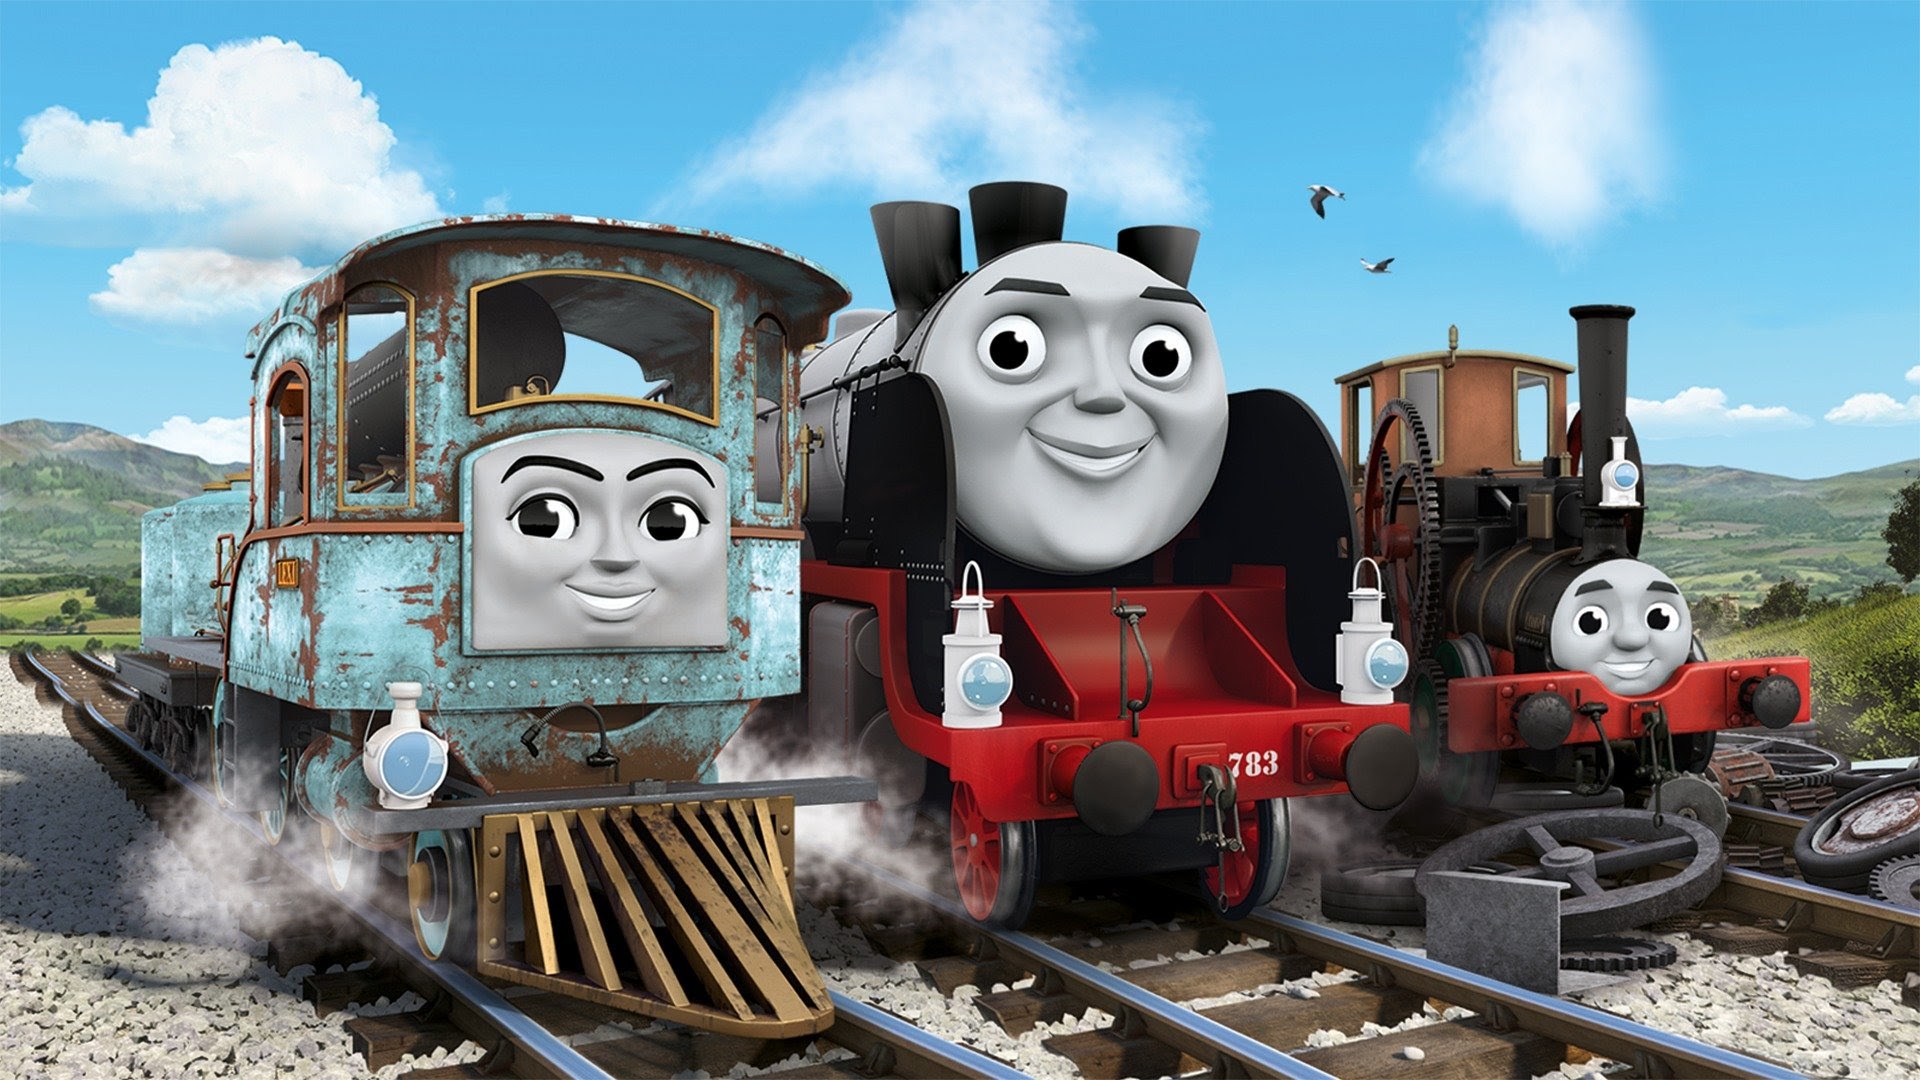 Thomas e seus amigos: Viagem ao desconhecido - O filme (Dublado